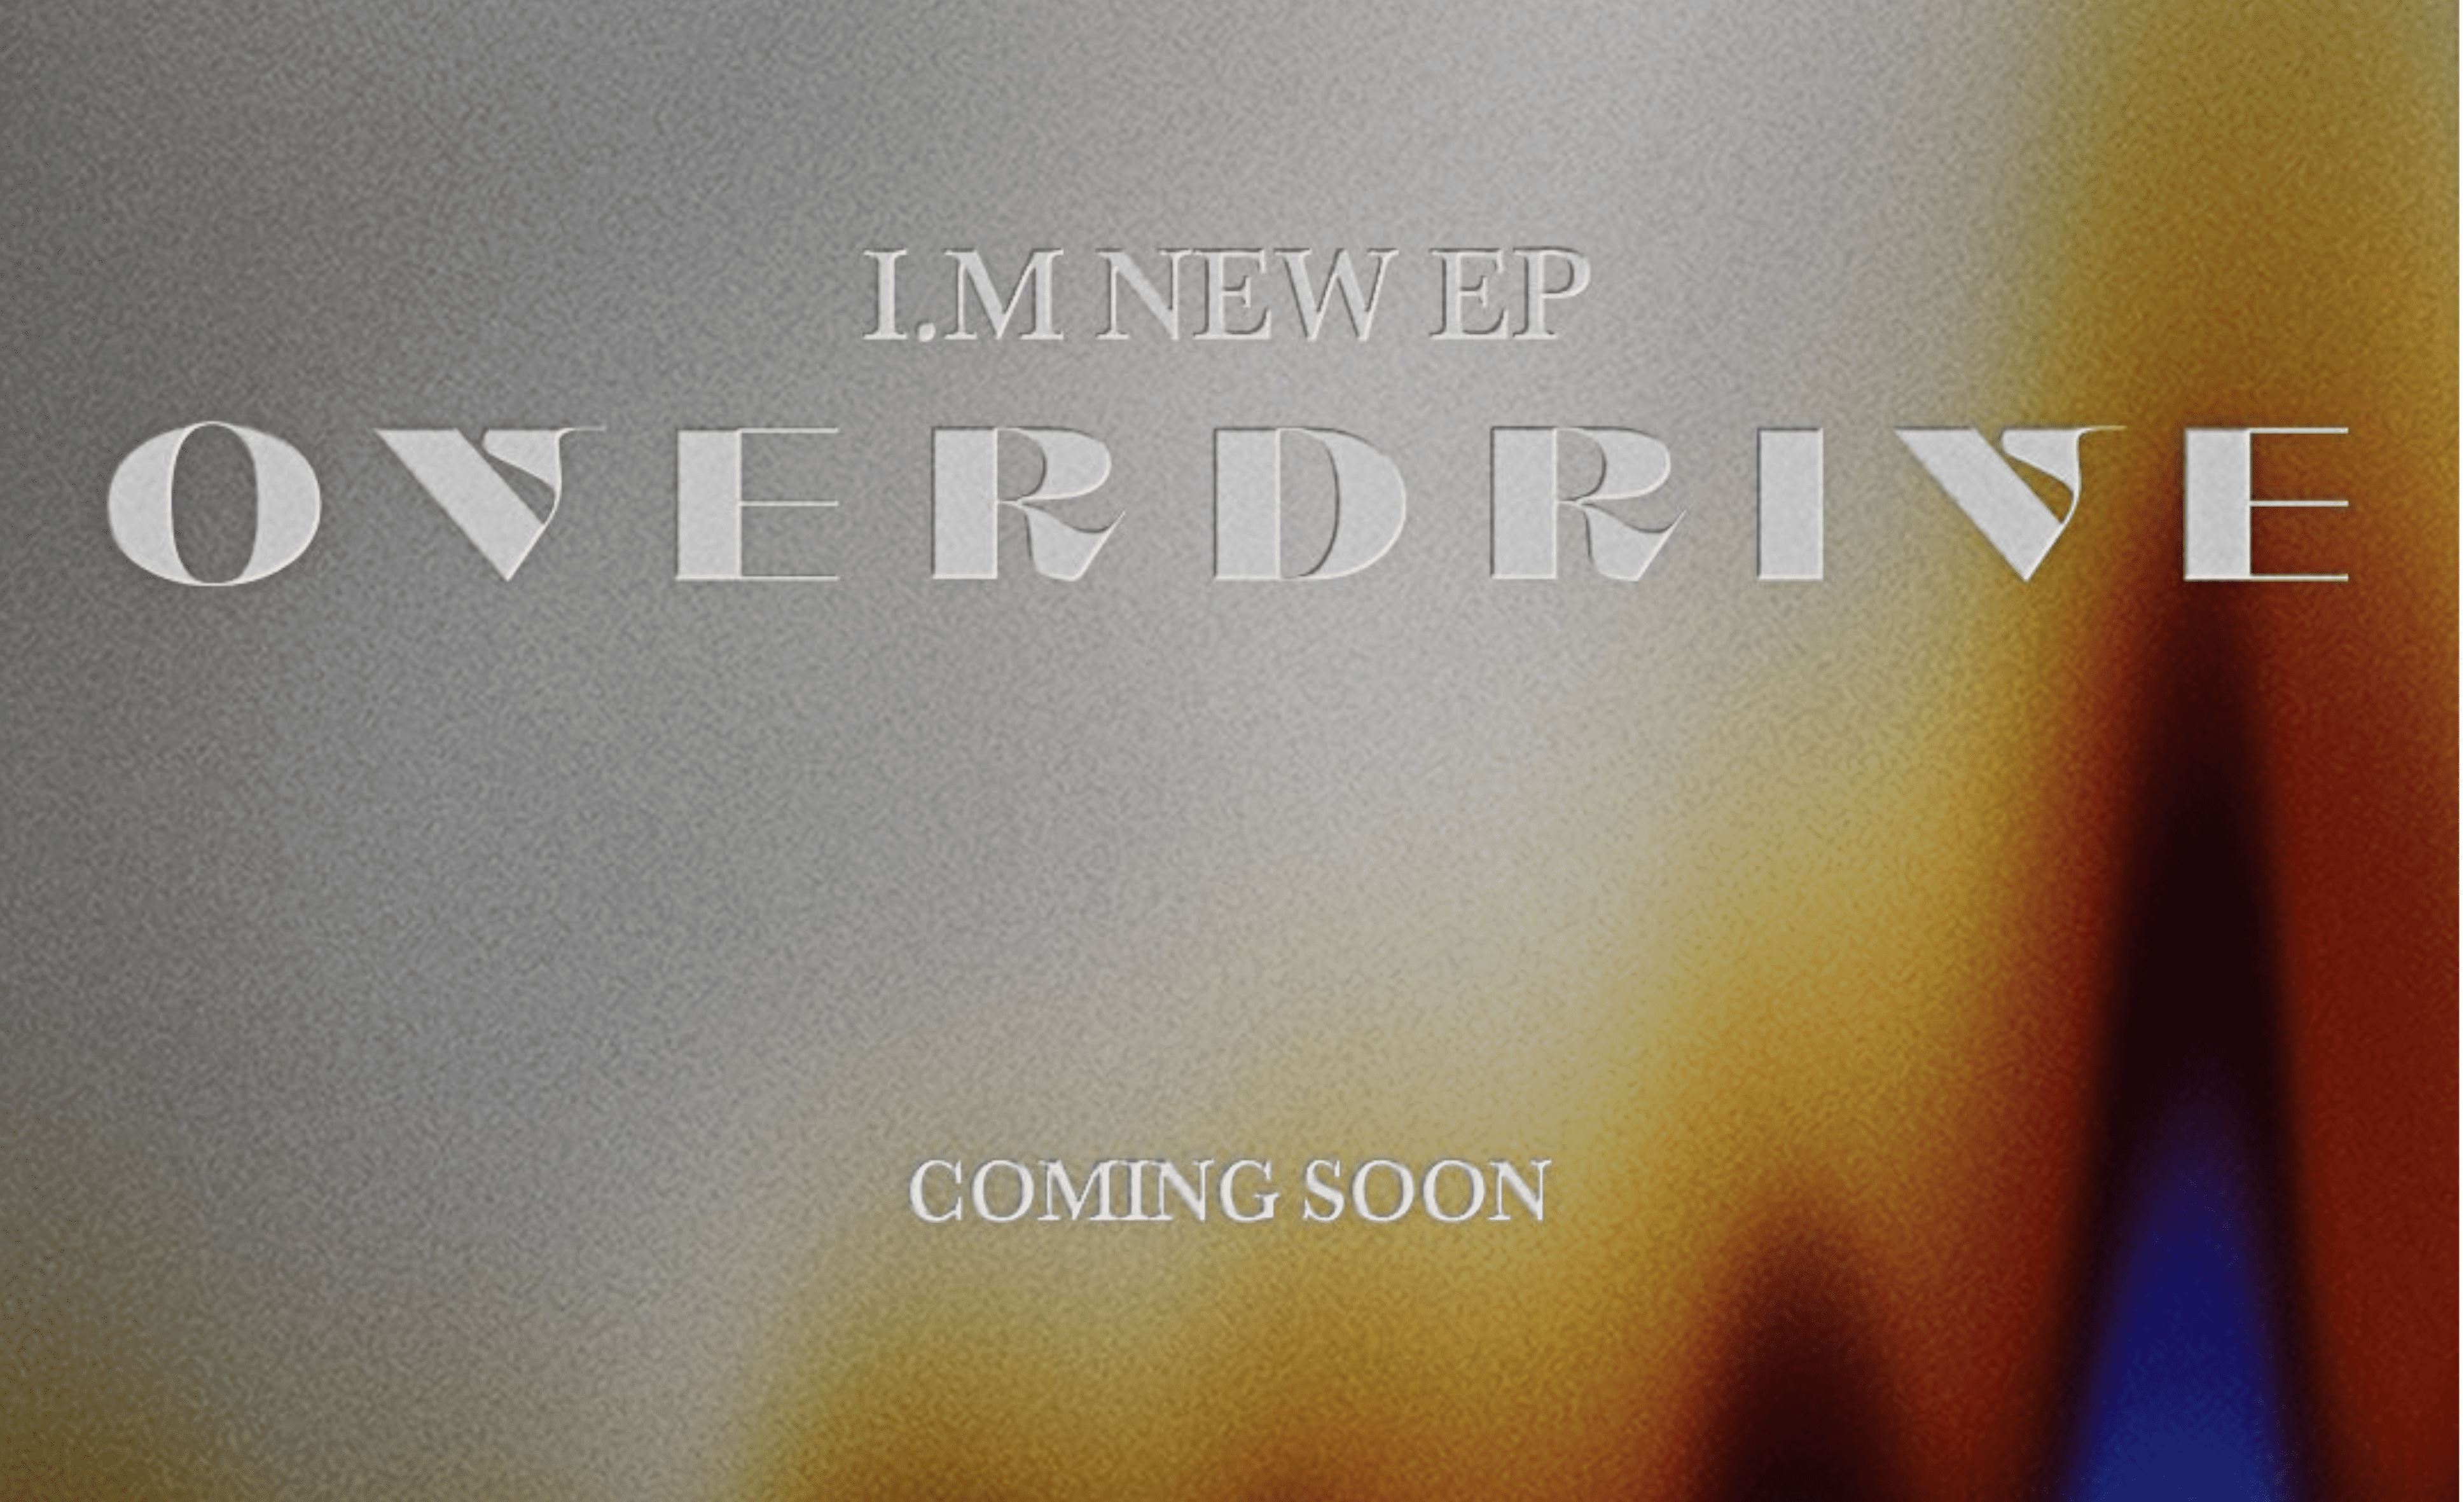 Möchtest du wissen, welche Extras das neue Album von I.M. zu bieten hat?